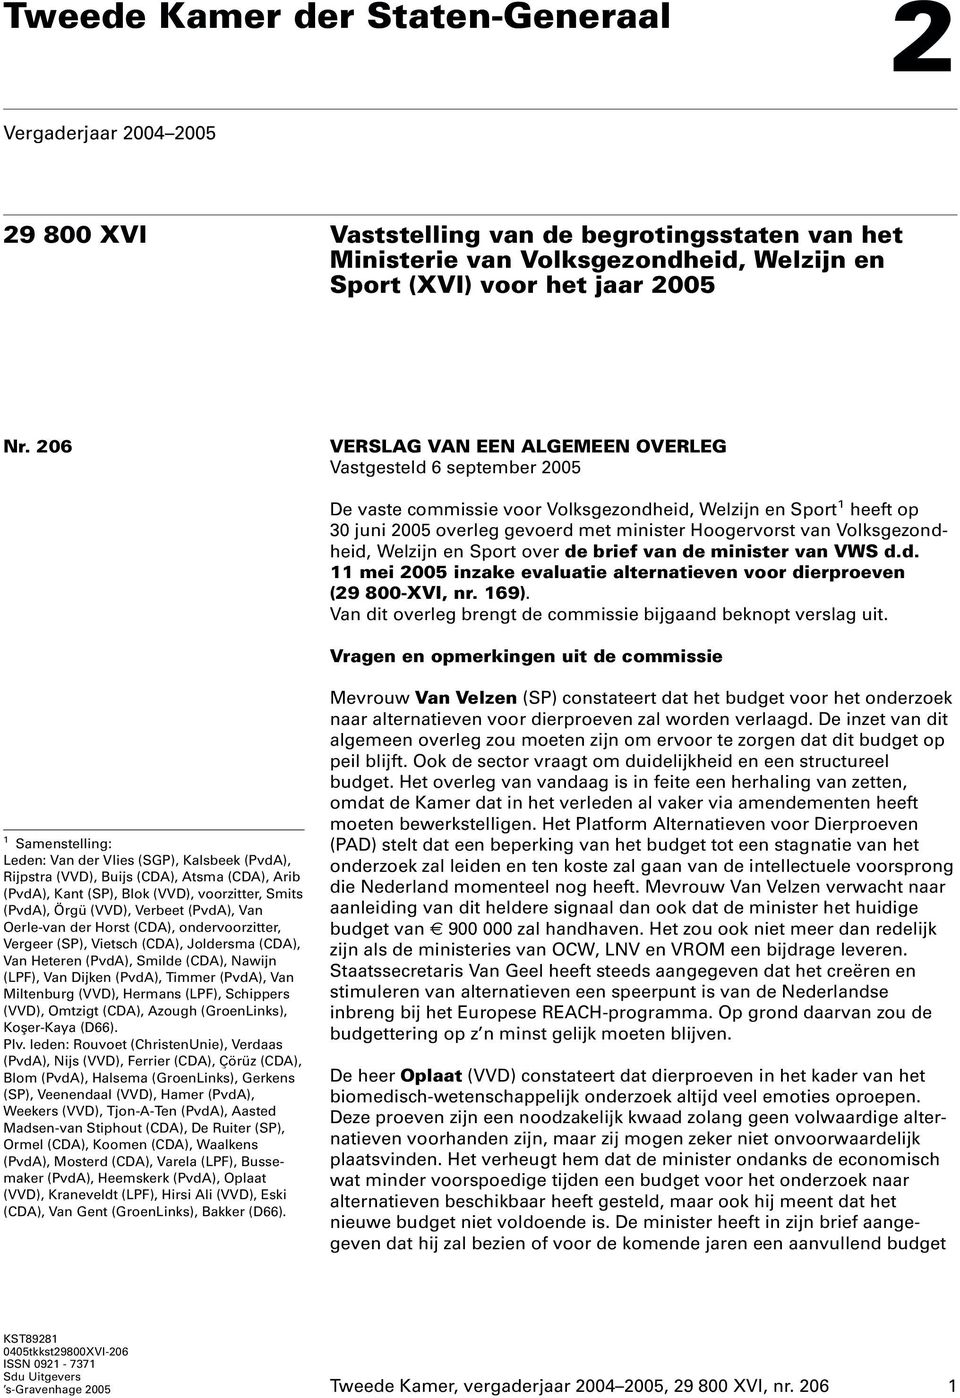 Volksgezondheid, Welzijn en Sport over de brief van de minister van VWS d.d. 11 mei 2005 inzake evaluatie alternatieven voor dierproeven (29 800-XVI, nr. 169).